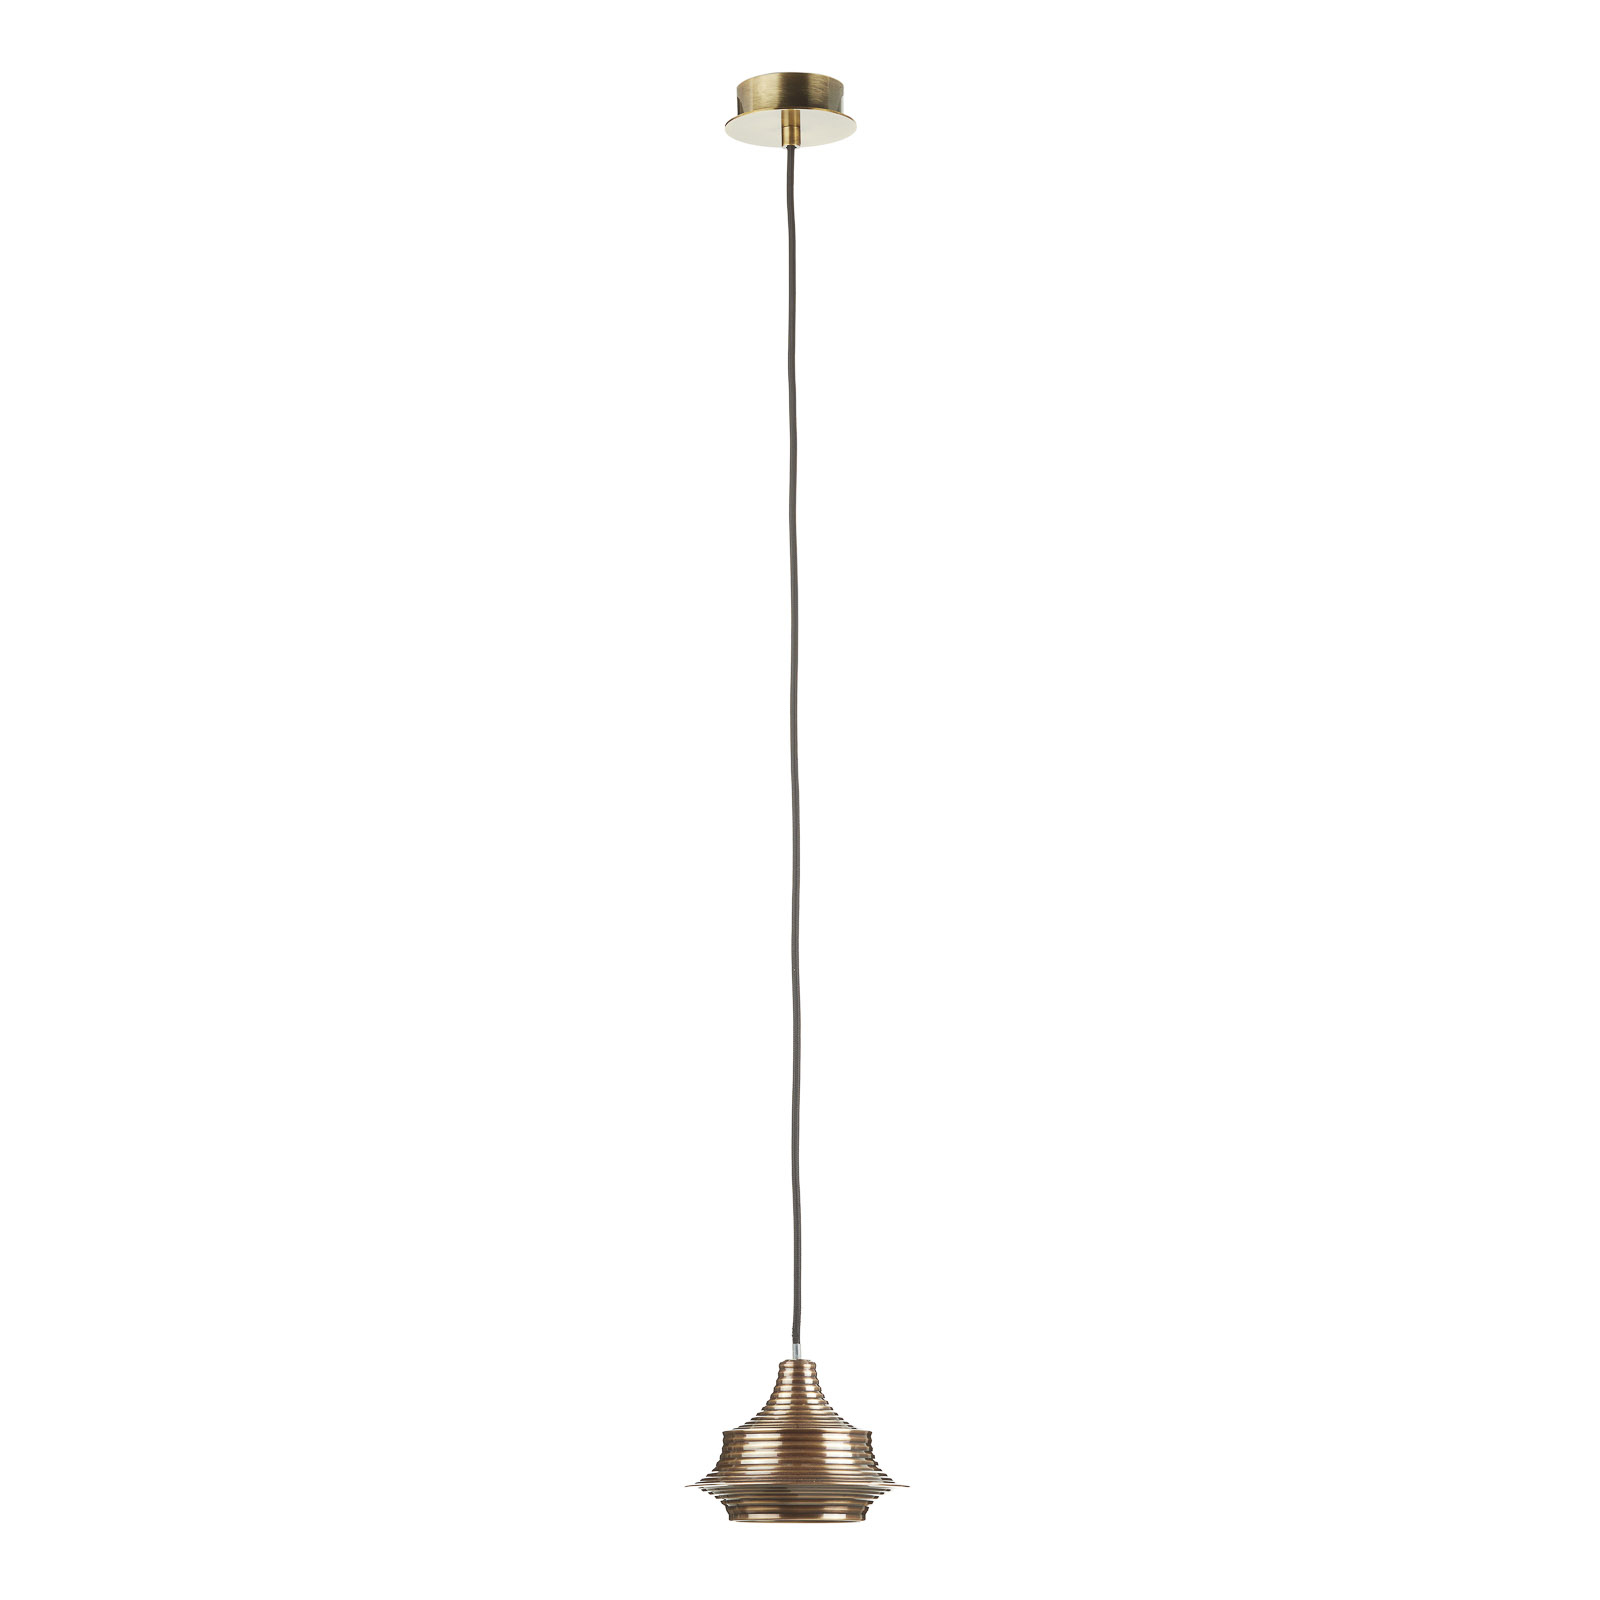 Bover Tibeta 02 - LED pendant light, antique brass